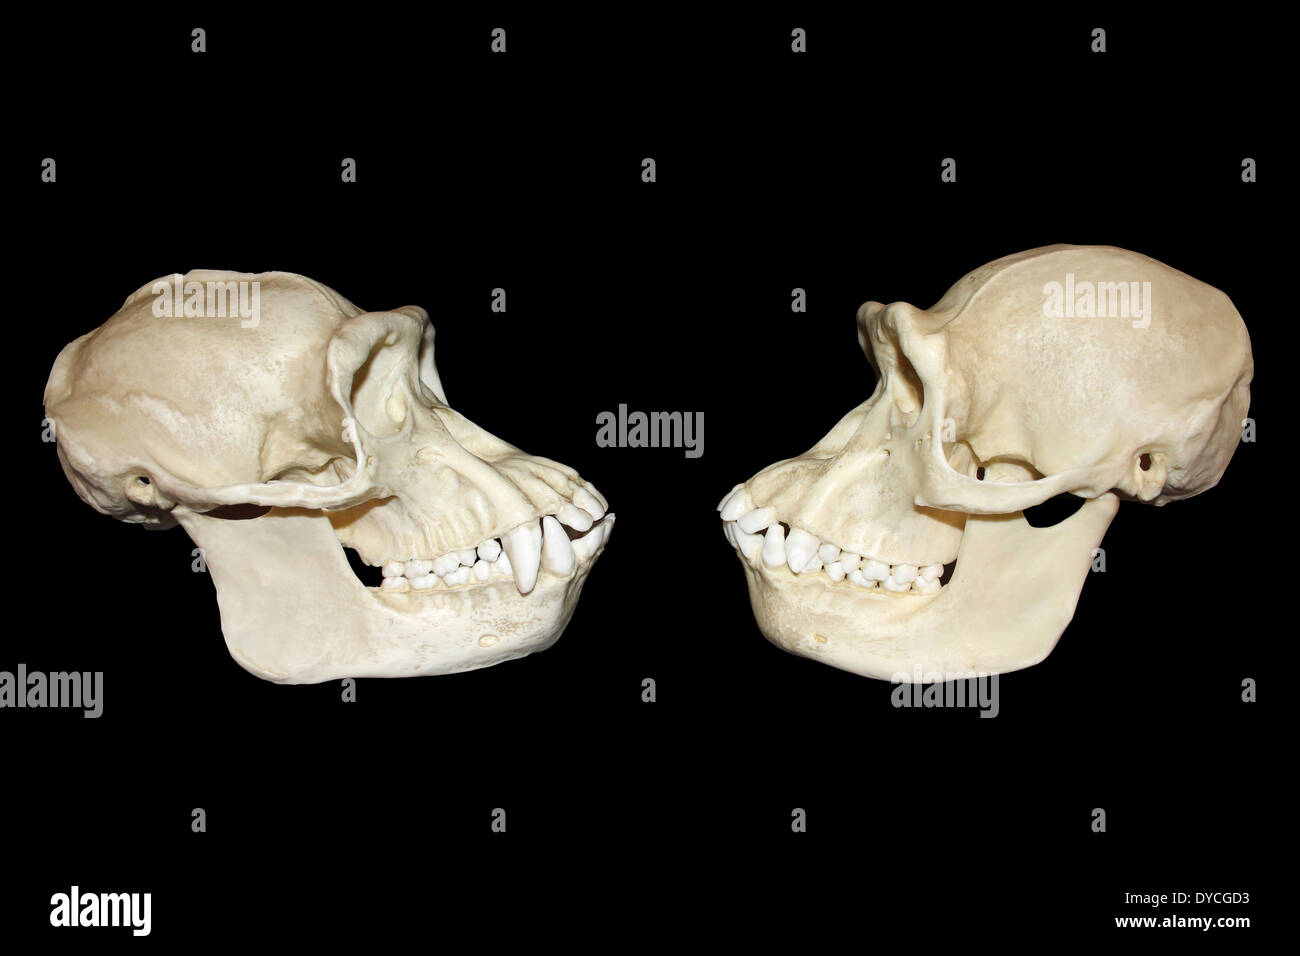 Side View-Vergleich zwischen männlichen und weiblichen Schimpansen Schädel Stockfoto